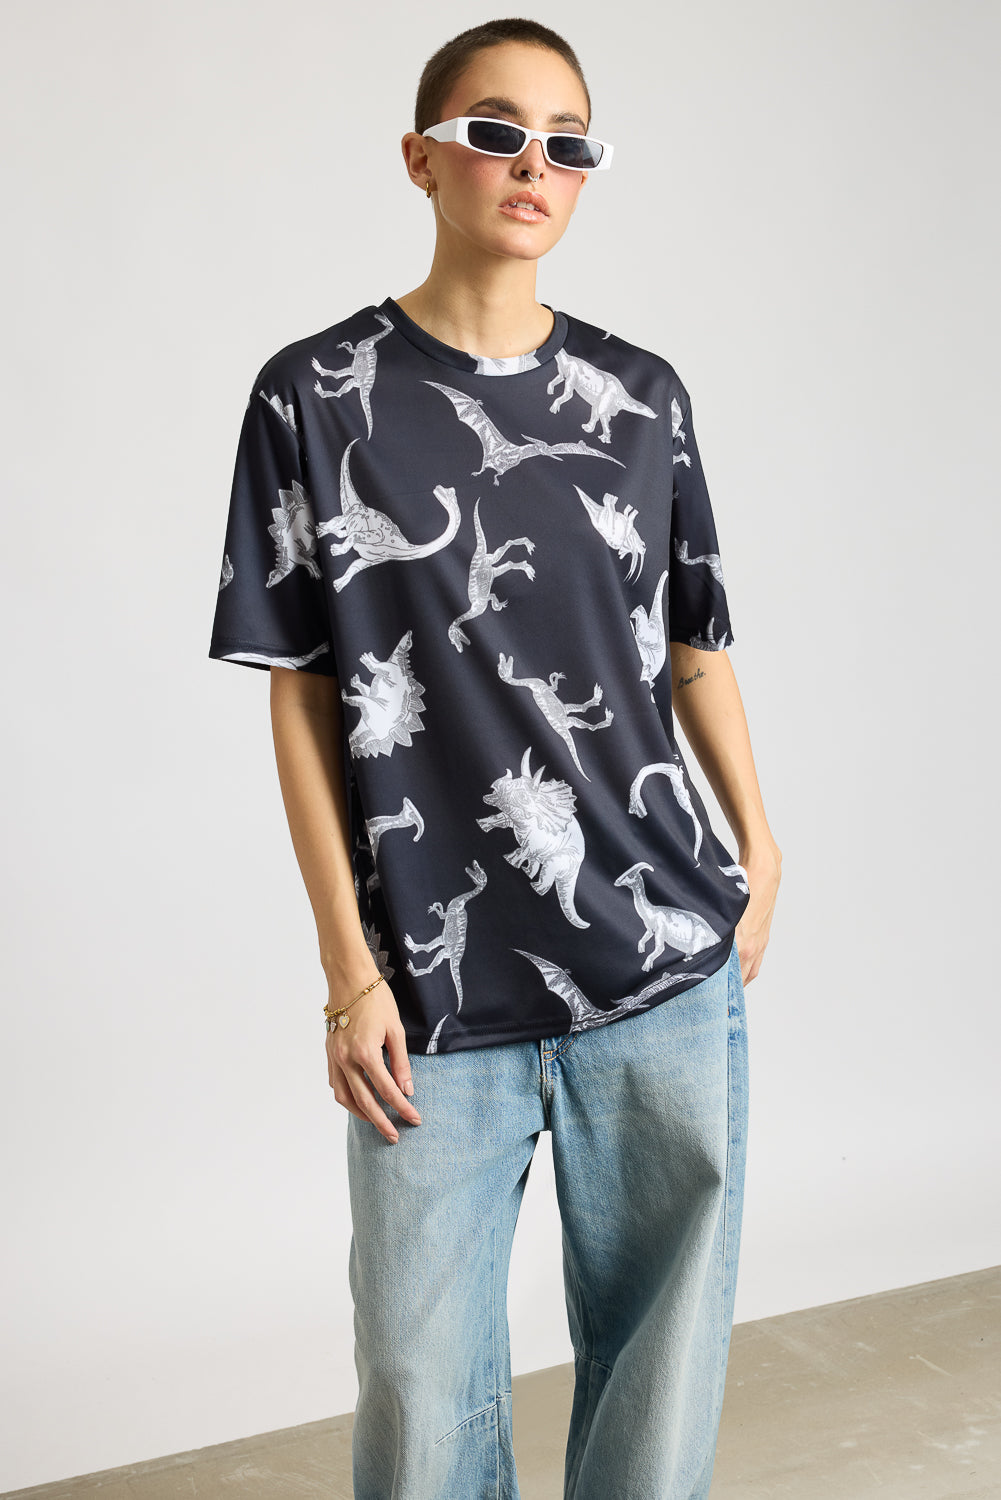 AOP Women's T-shirt - Dinosaurs